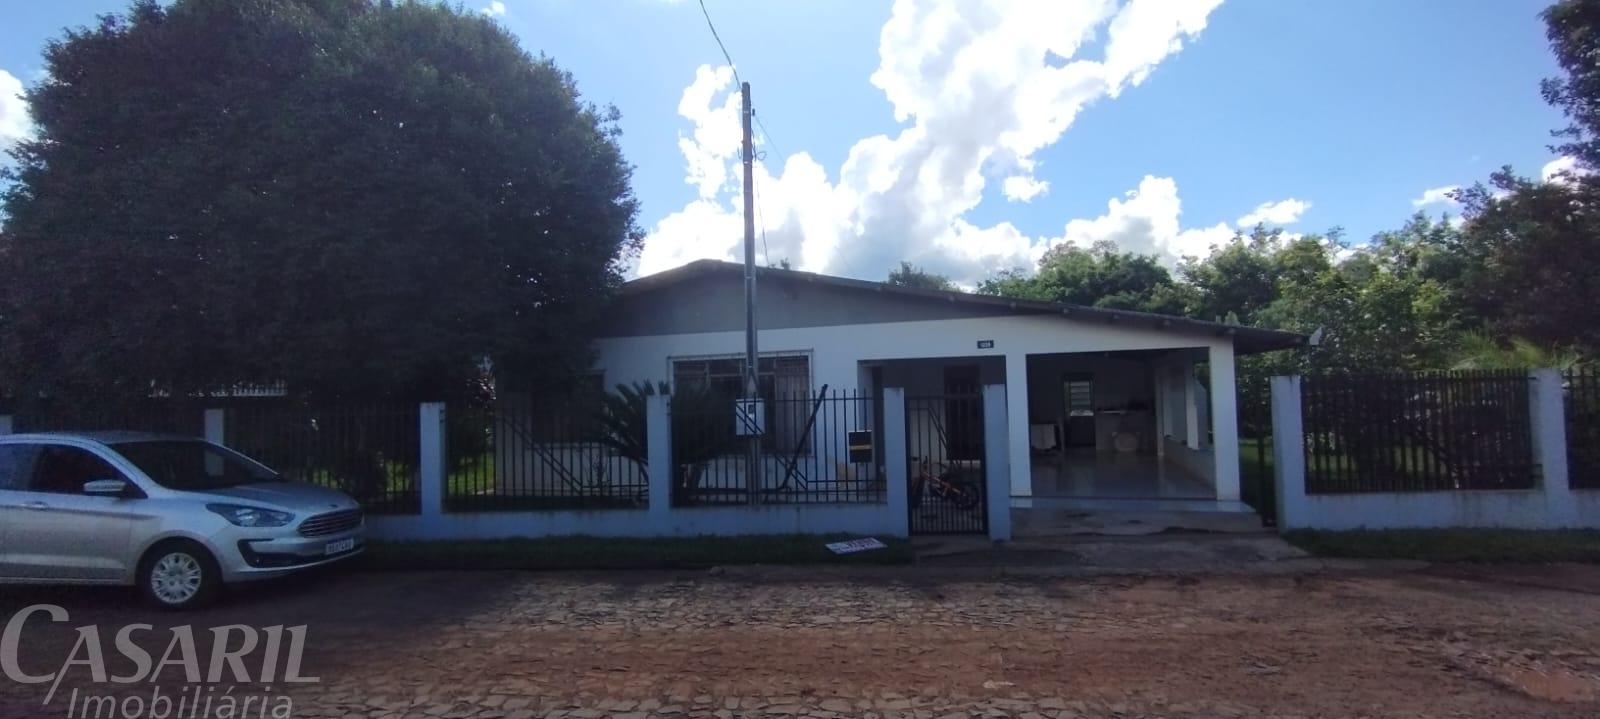 Casa Com 4 Dormitórios À Venda, Pinheirinho, Francisco Beltrao - Pr